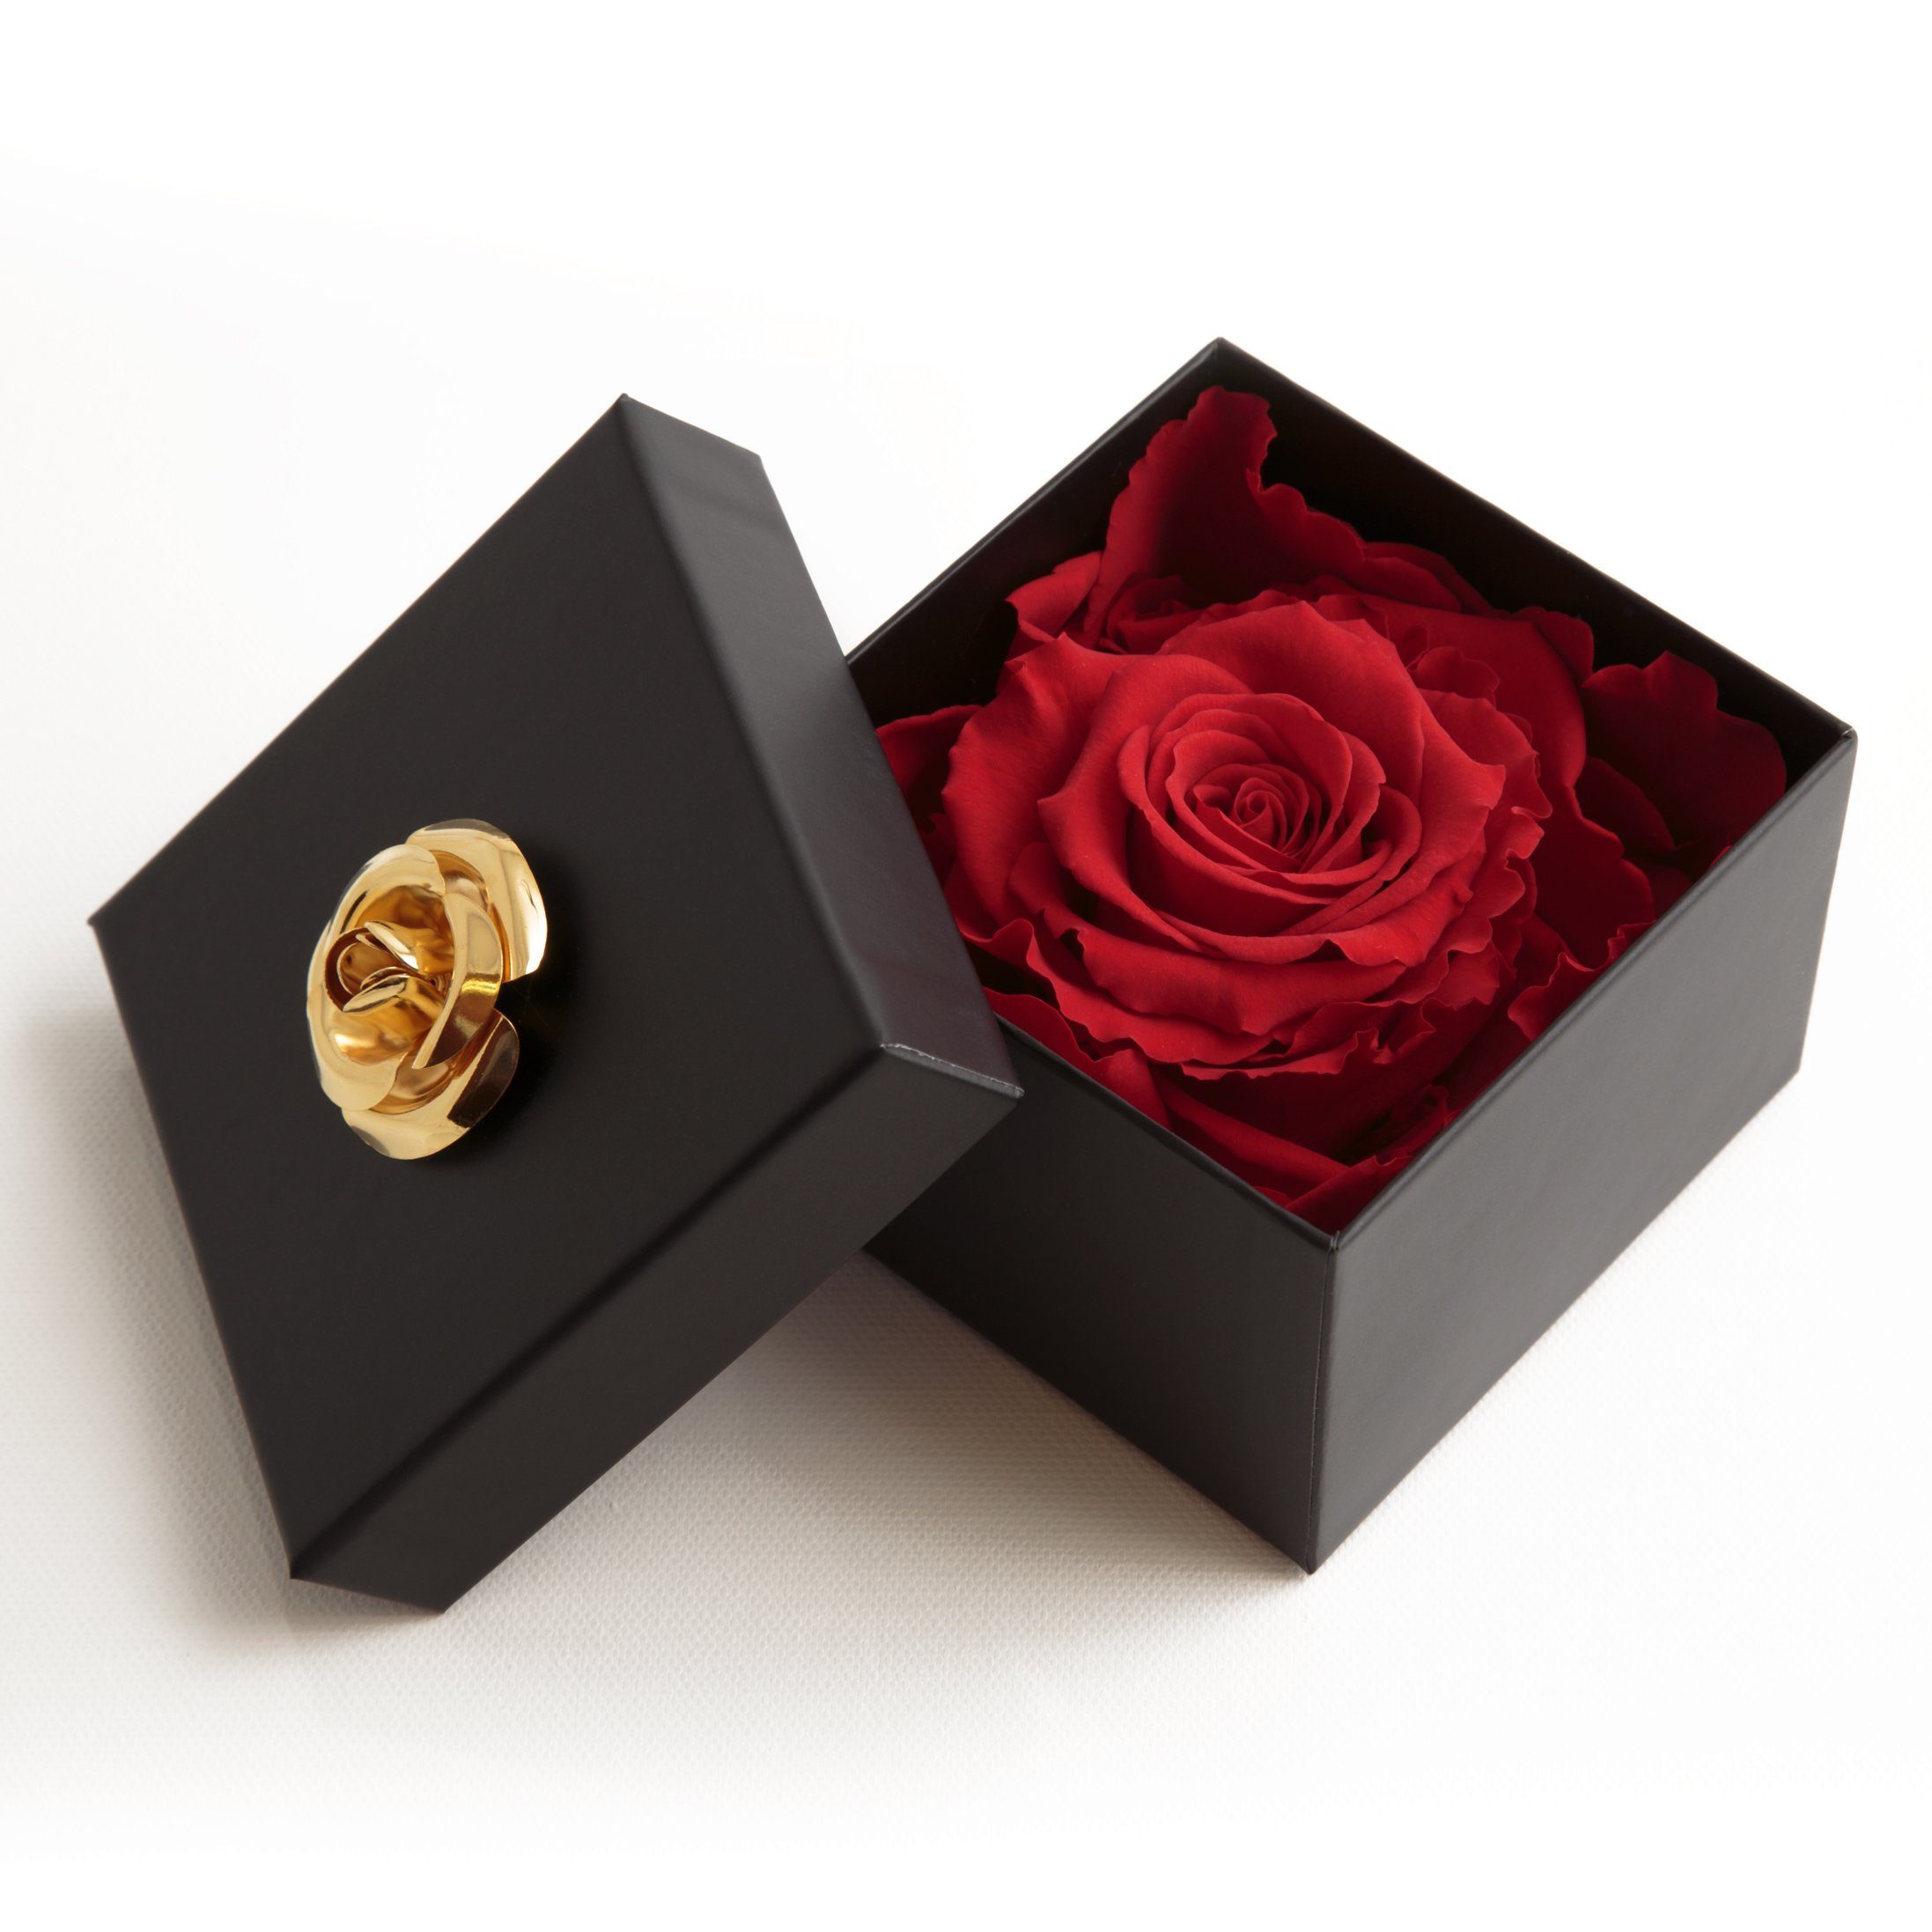 Echte 3 Rose Heidelberg, rot 3 zu Blumendeckel SCHULZ haltbar cm, in Rose, haltbar Box Rose mit Infinity 6.5 Jahre Jahre Kunstblume bis Rose 1 ROSEMARIE Höhe